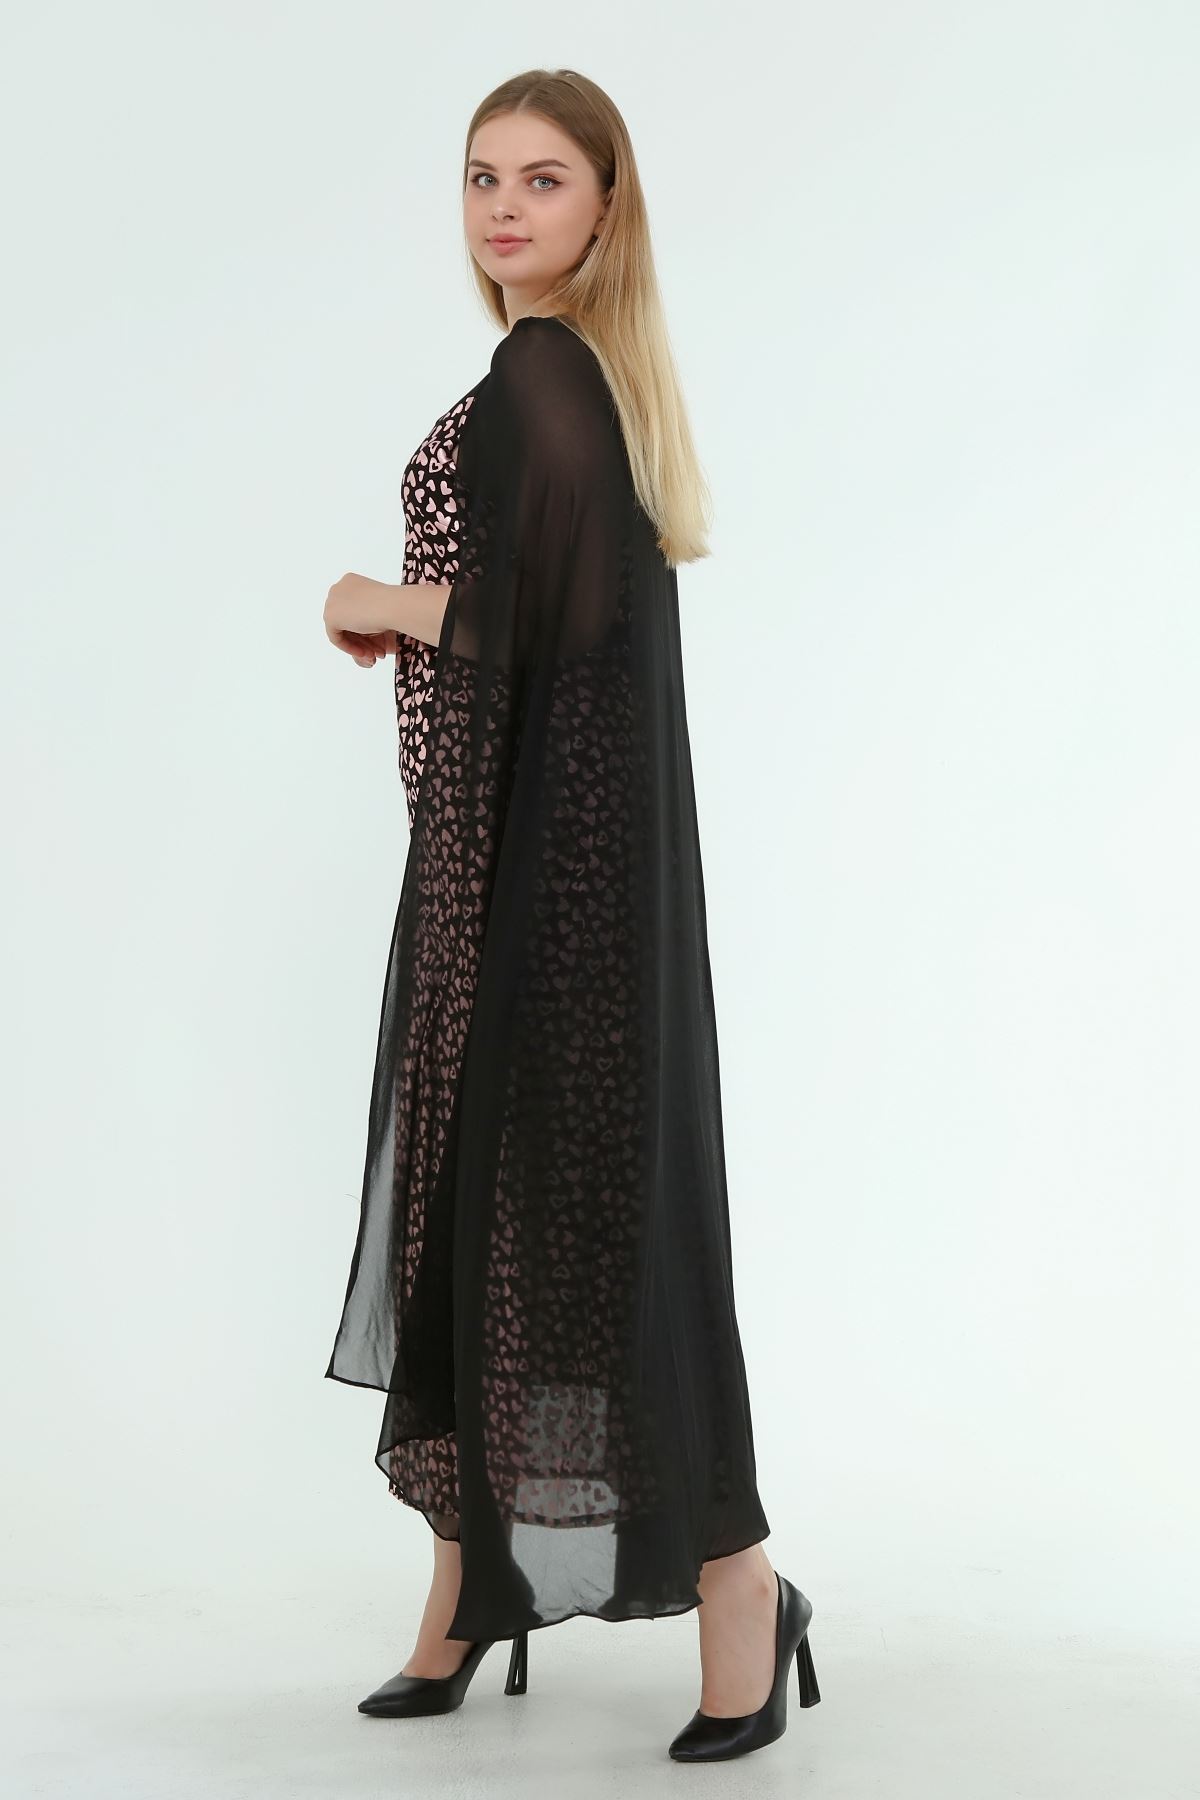 Kadın Büyük Beden Siyah Desenli Pelerinli Gece Elbisesi  A1-4053